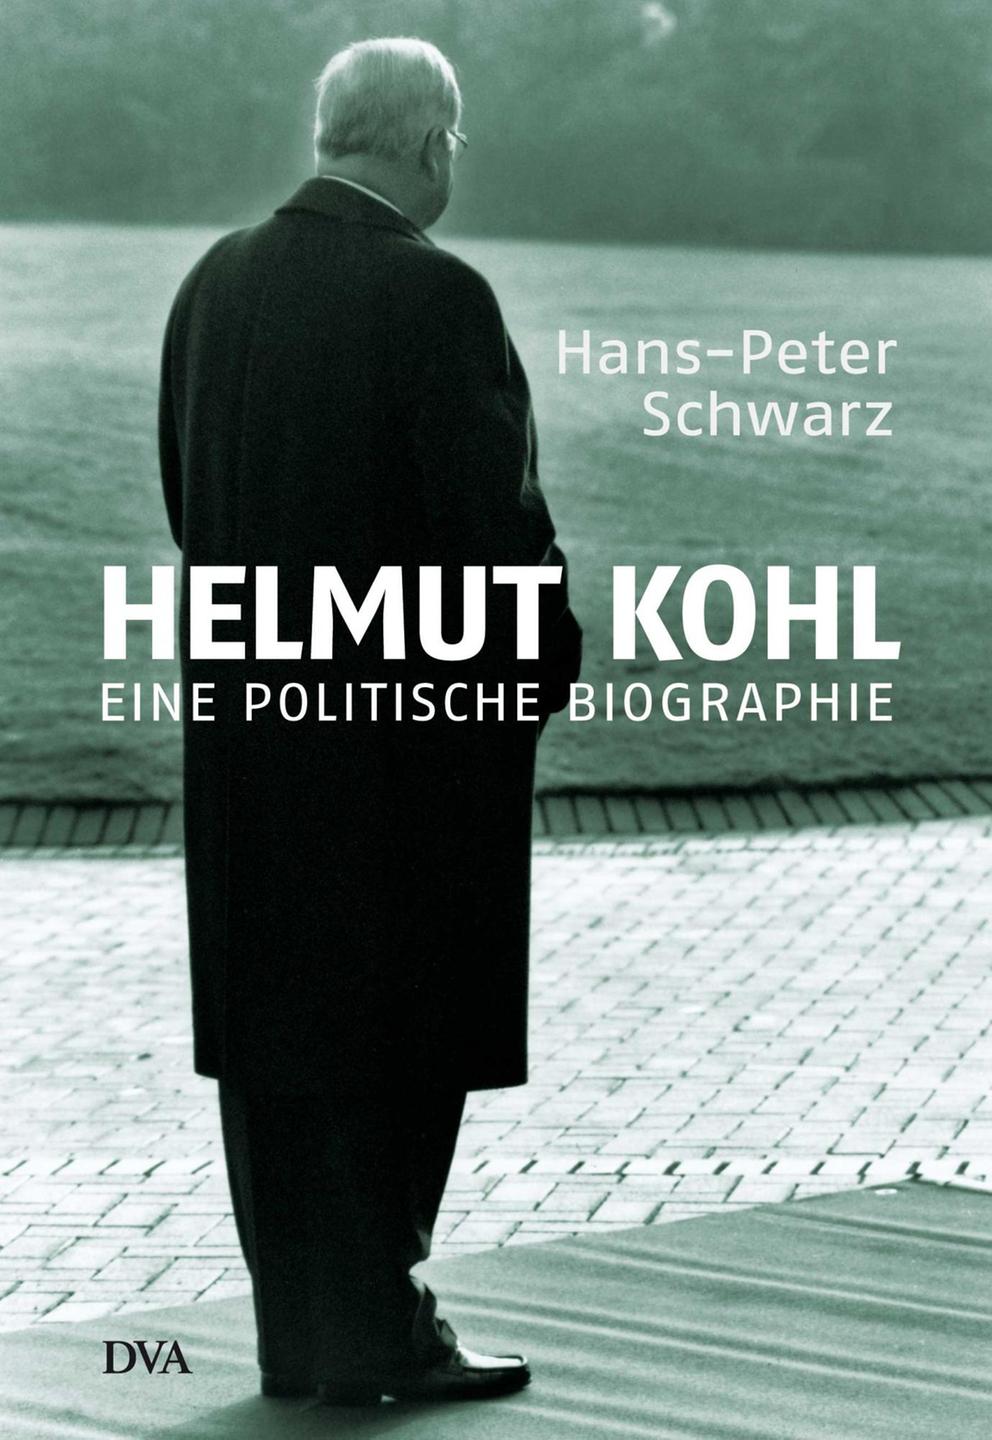 Cover der Biografie "Helmut Kohl - Eine politische Biographie" von Hans-Peter Schwarz 